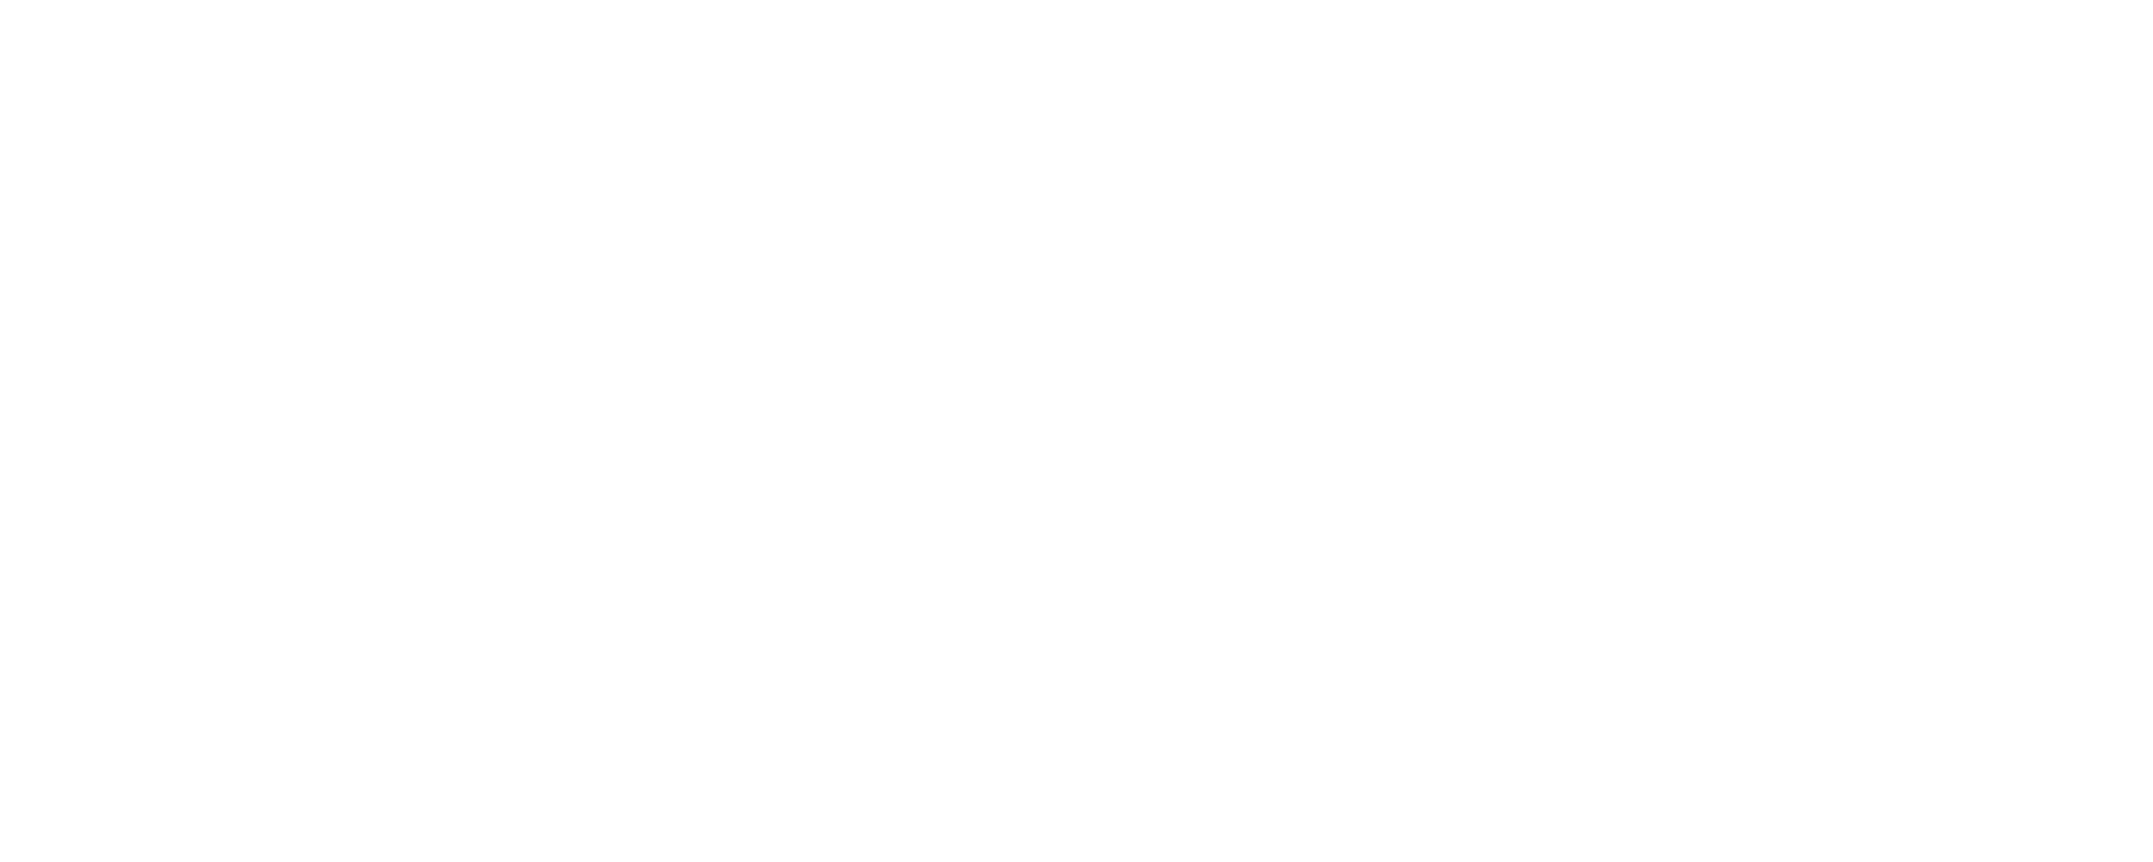 Burwood Brickworks Shopping